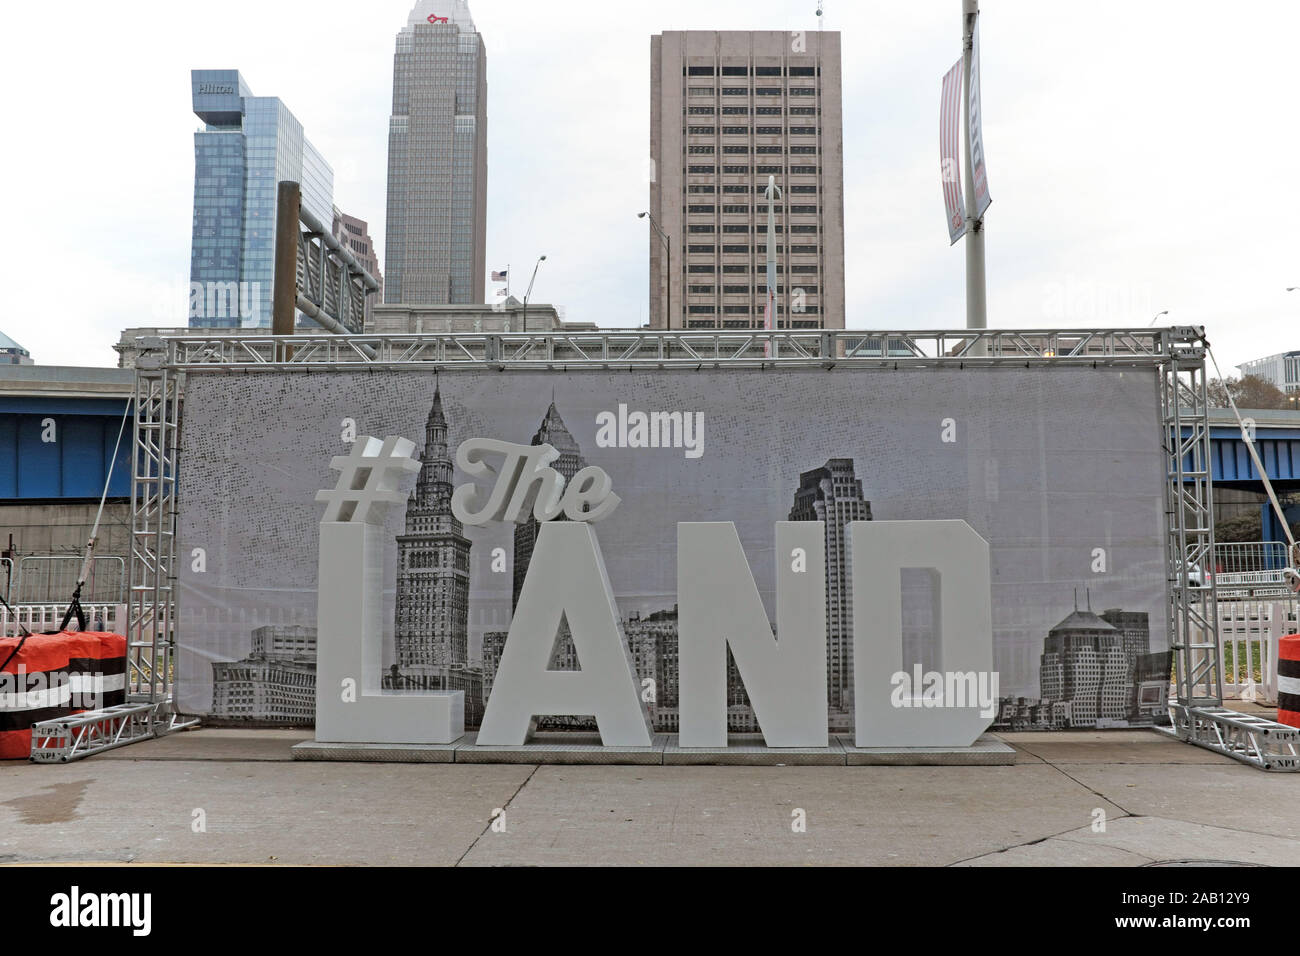 #TheLand signo con una vista parcial del horizonte de Cleveland, Ohio en el fondo se encuentra sin gente alrededor antes de un juego de los Browns. Foto de stock